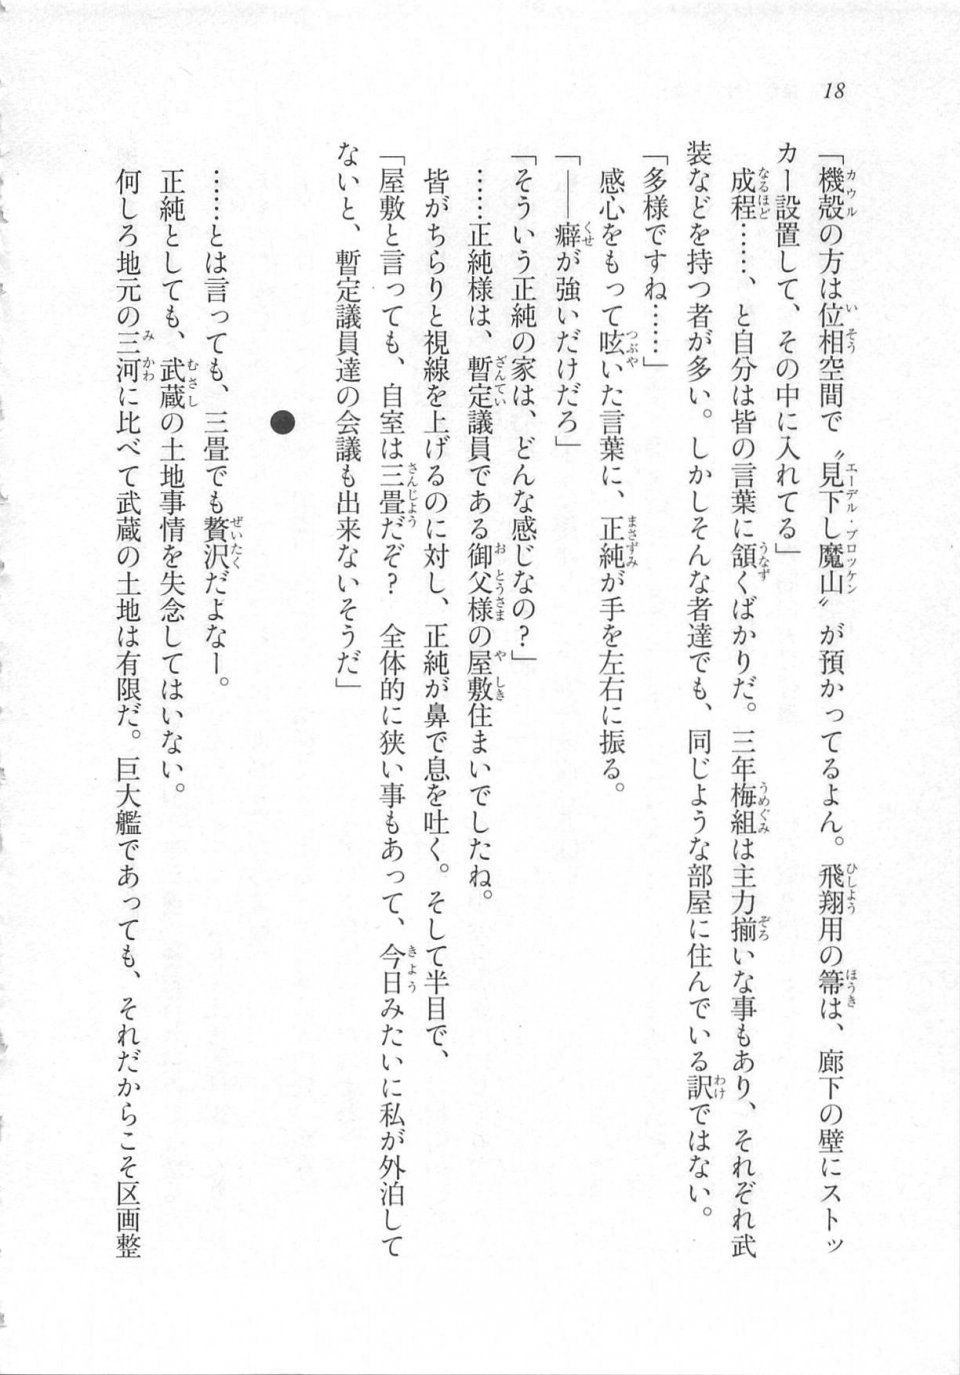 Kyoukai Senjou no Horizon LN Sidestory Vol 3 - Photo #22